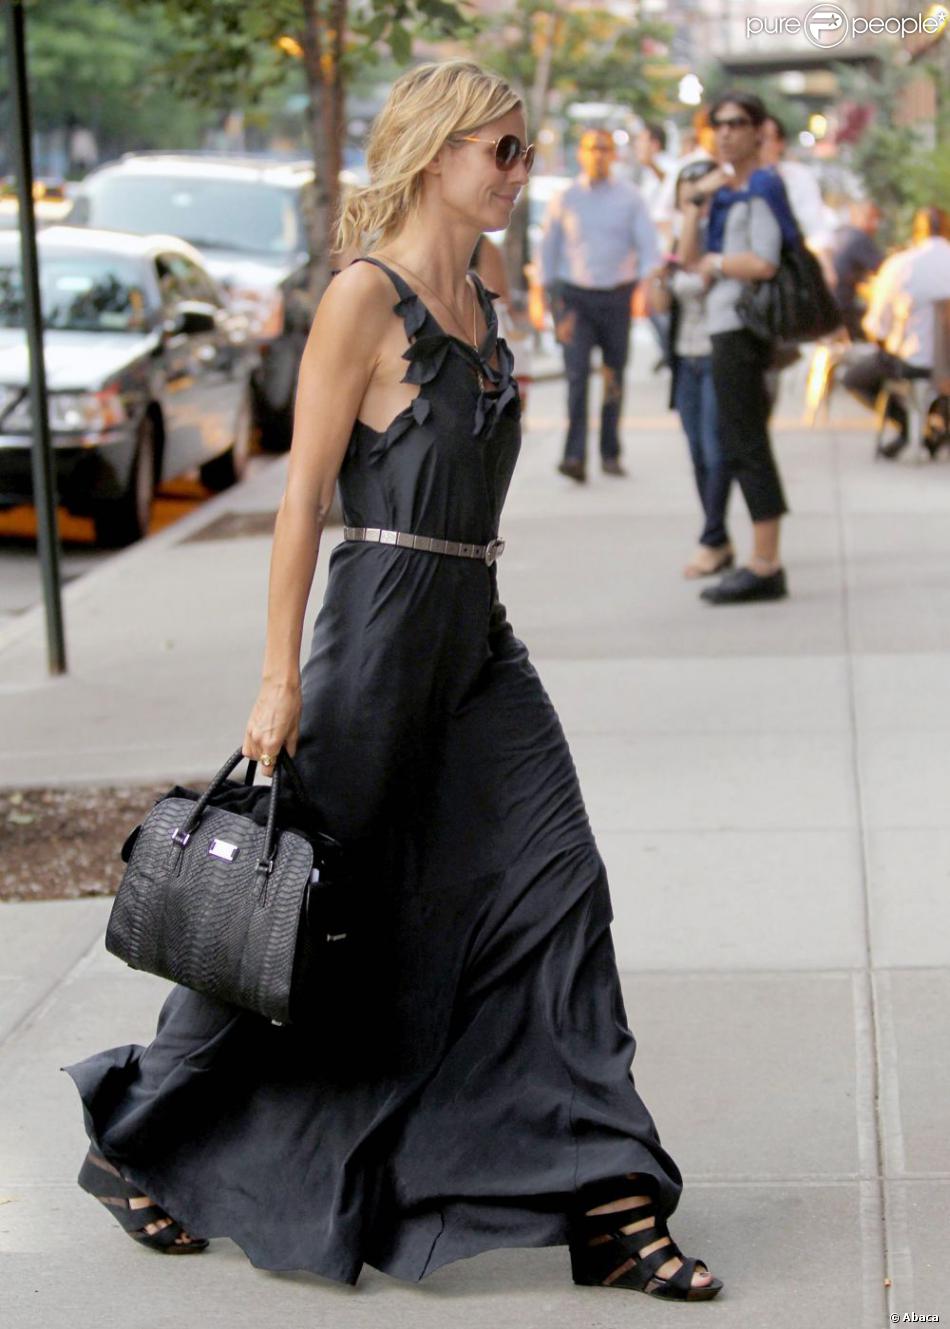 Le top model Heidi Klum arrive à son hôtel dans un total look noir qui fait un carton. A New York City, le 6 juillet 2011.